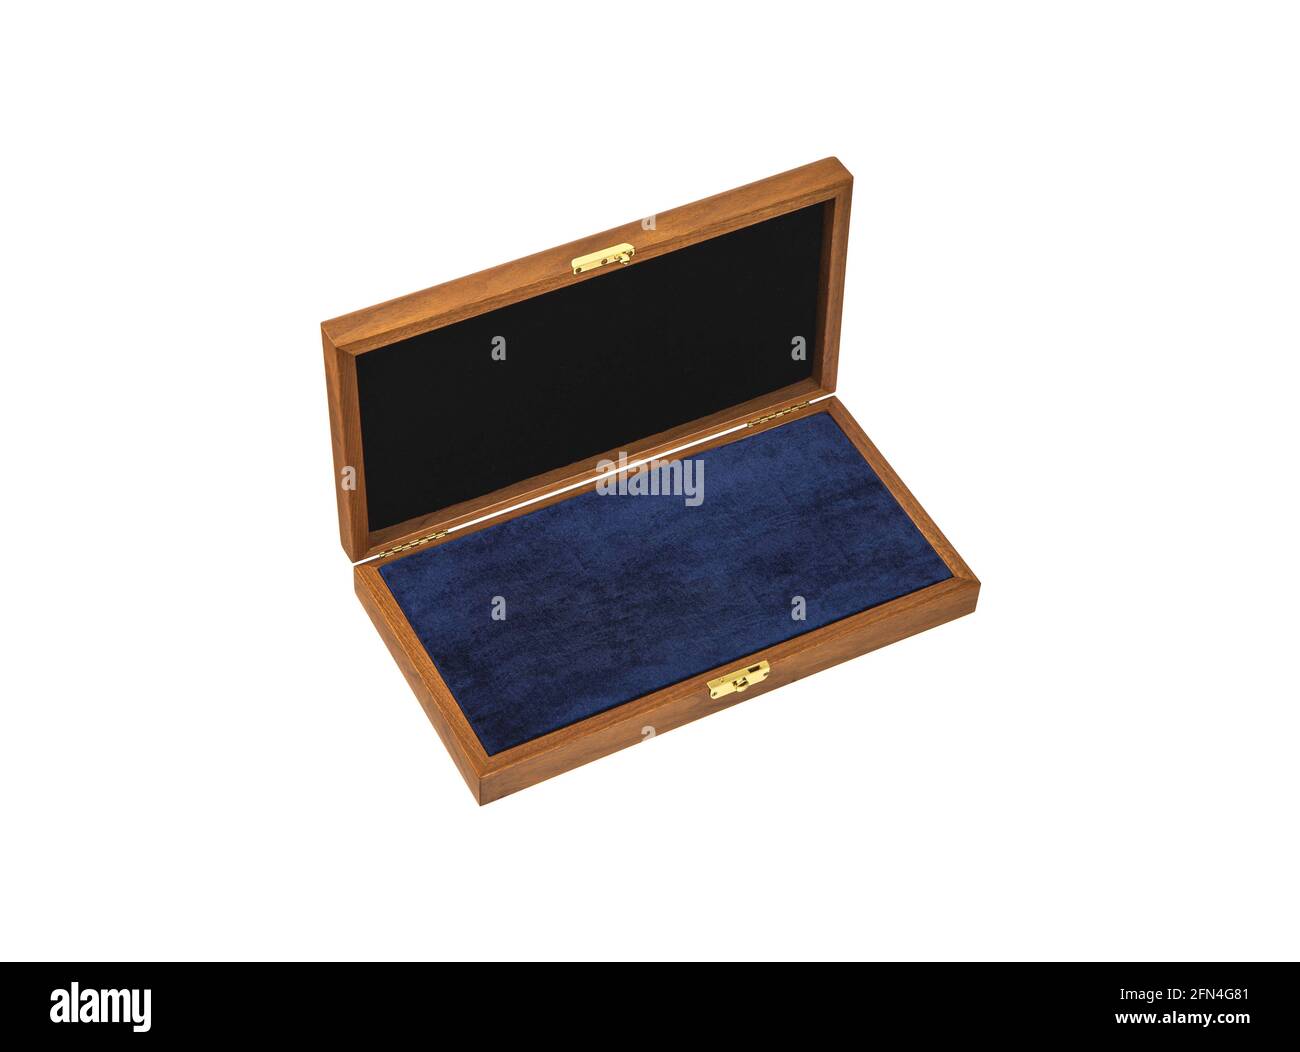 Eine offene Holzkiste mit einem Metallschloss. Schublade aus hellem Holz und dunkel gepolsterter Innenraum zur Aufbewahrung von Wertsachen. Isolieren auf weißem Hintergrund. Stockfoto